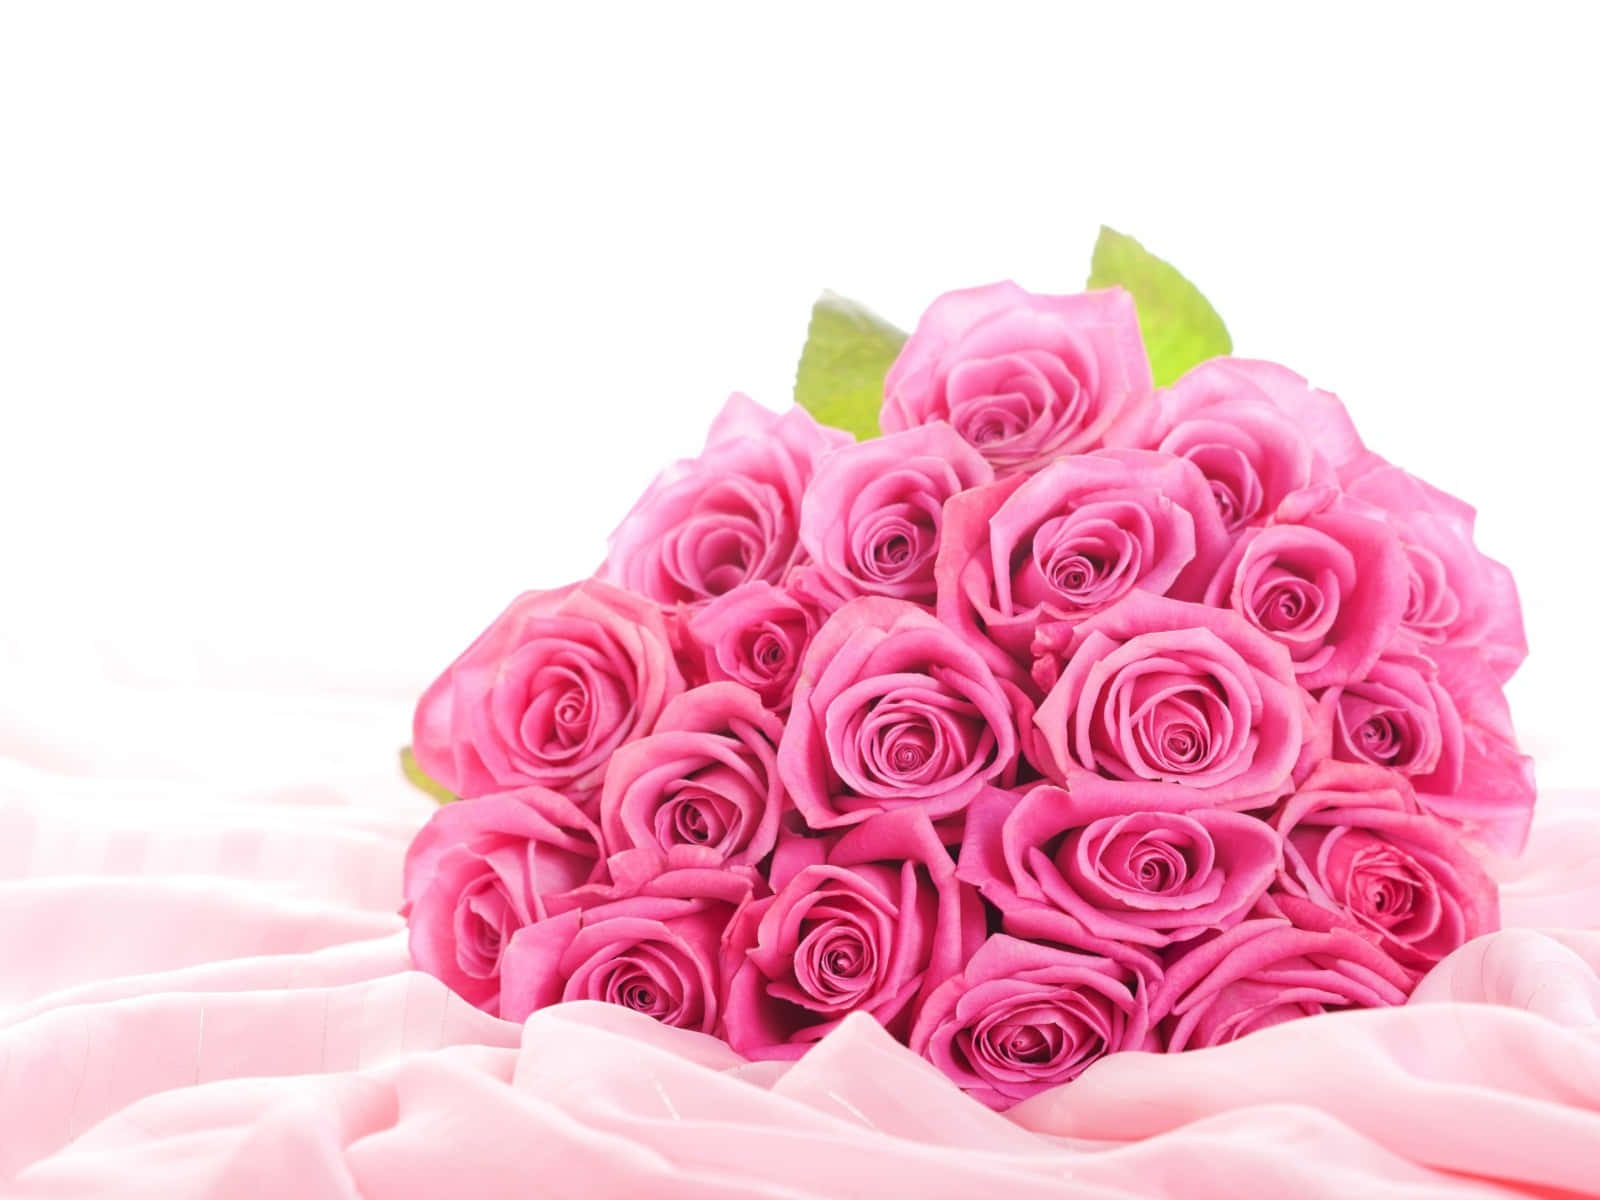 Unarosa Rosa Brillante, Simbolo Di Amore, Gioia E Bellezza